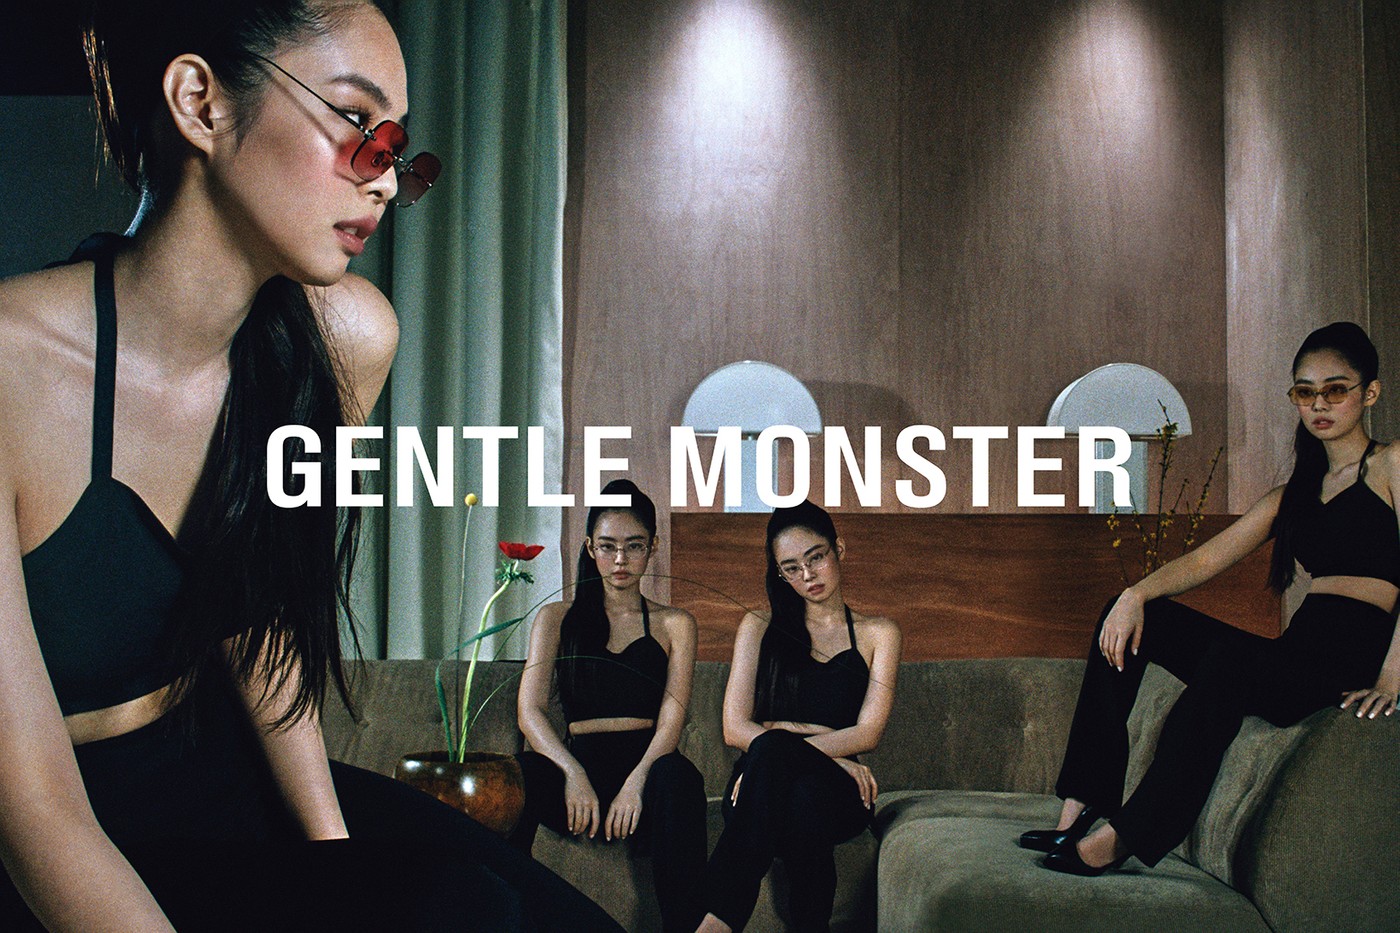 Солистка Blackpink Дженни Ким выпустила коллекцию очков вместе с Gentle Monster